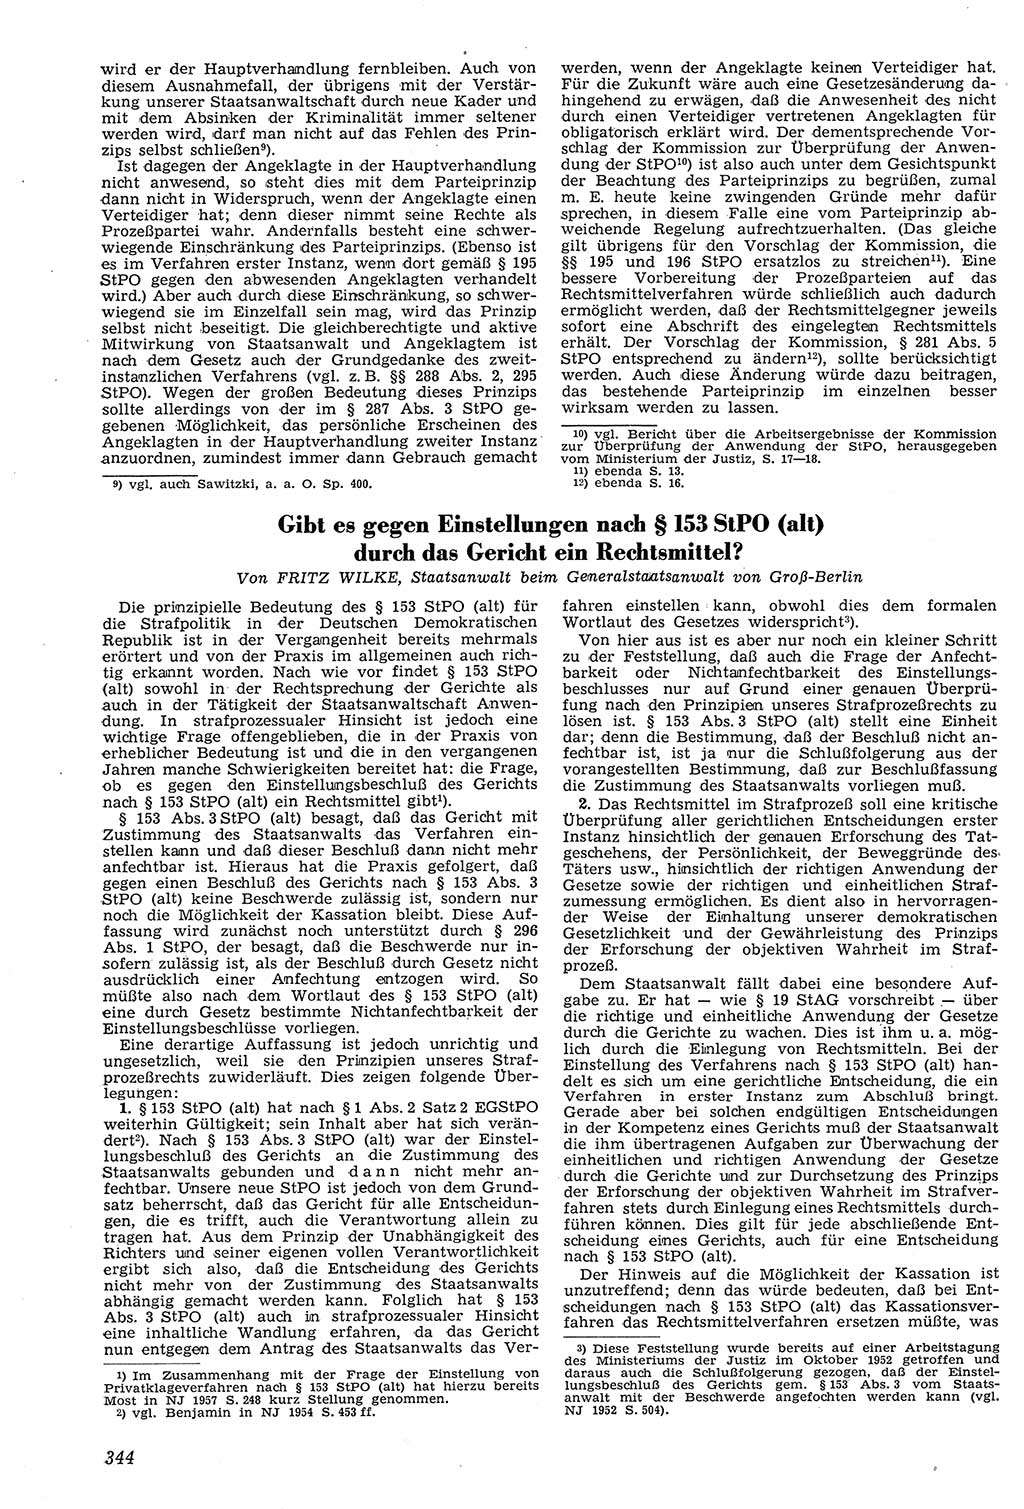 Neue Justiz (NJ), Zeitschrift für Recht und Rechtswissenschaft [Deutsche Demokratische Republik (DDR)], 11. Jahrgang 1957, Seite 344 (NJ DDR 1957, S. 344)